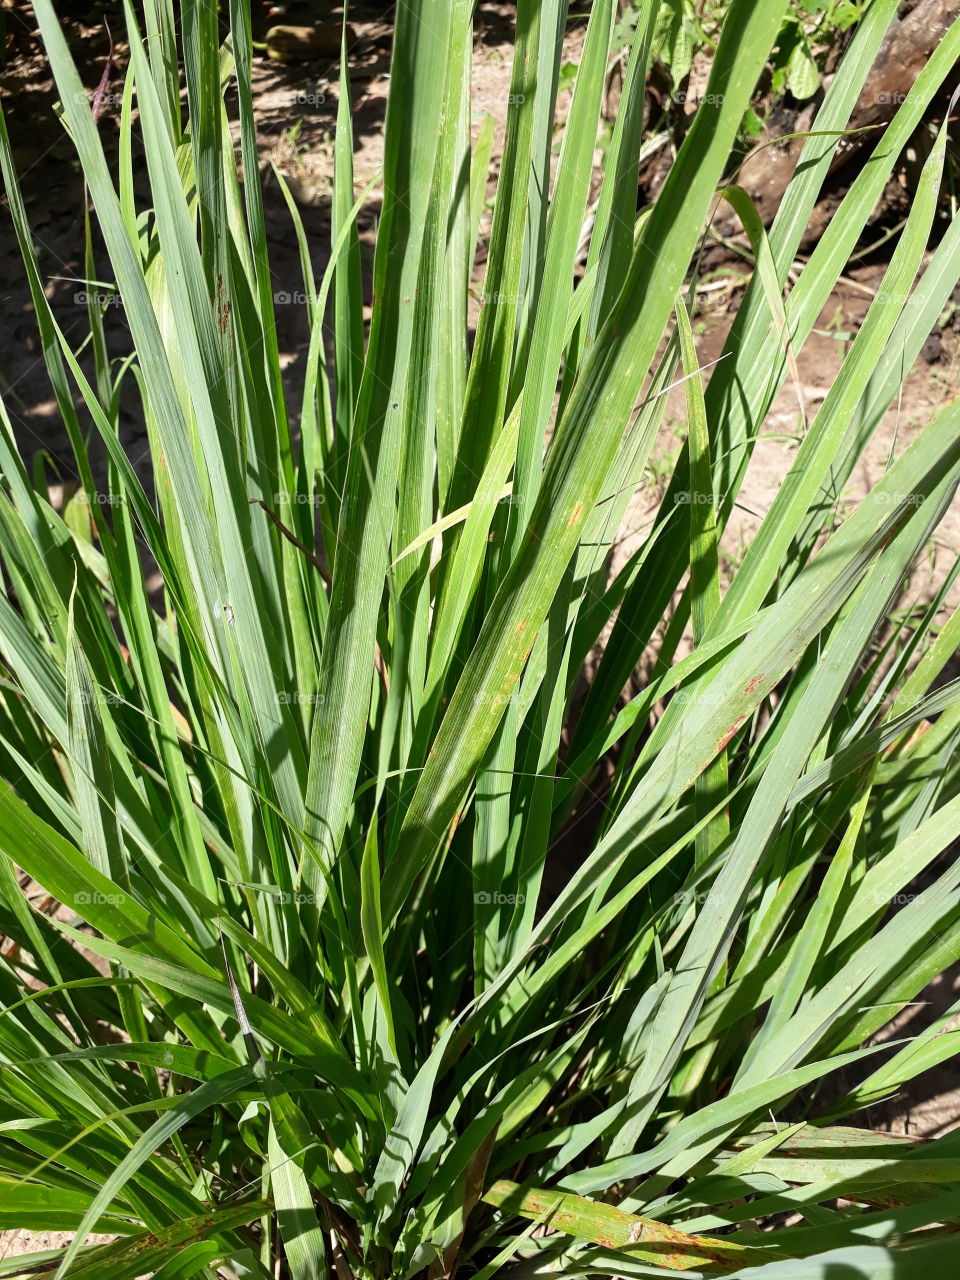 Erva-Príncipe também conhecido por Capim Santo ou Capim-Cidreira ou Capim-Limão, é uma planta herbácea da família Poaceae, nativa das regiões tropicais da Ásia, especialmente da Índia. Cha calmante.